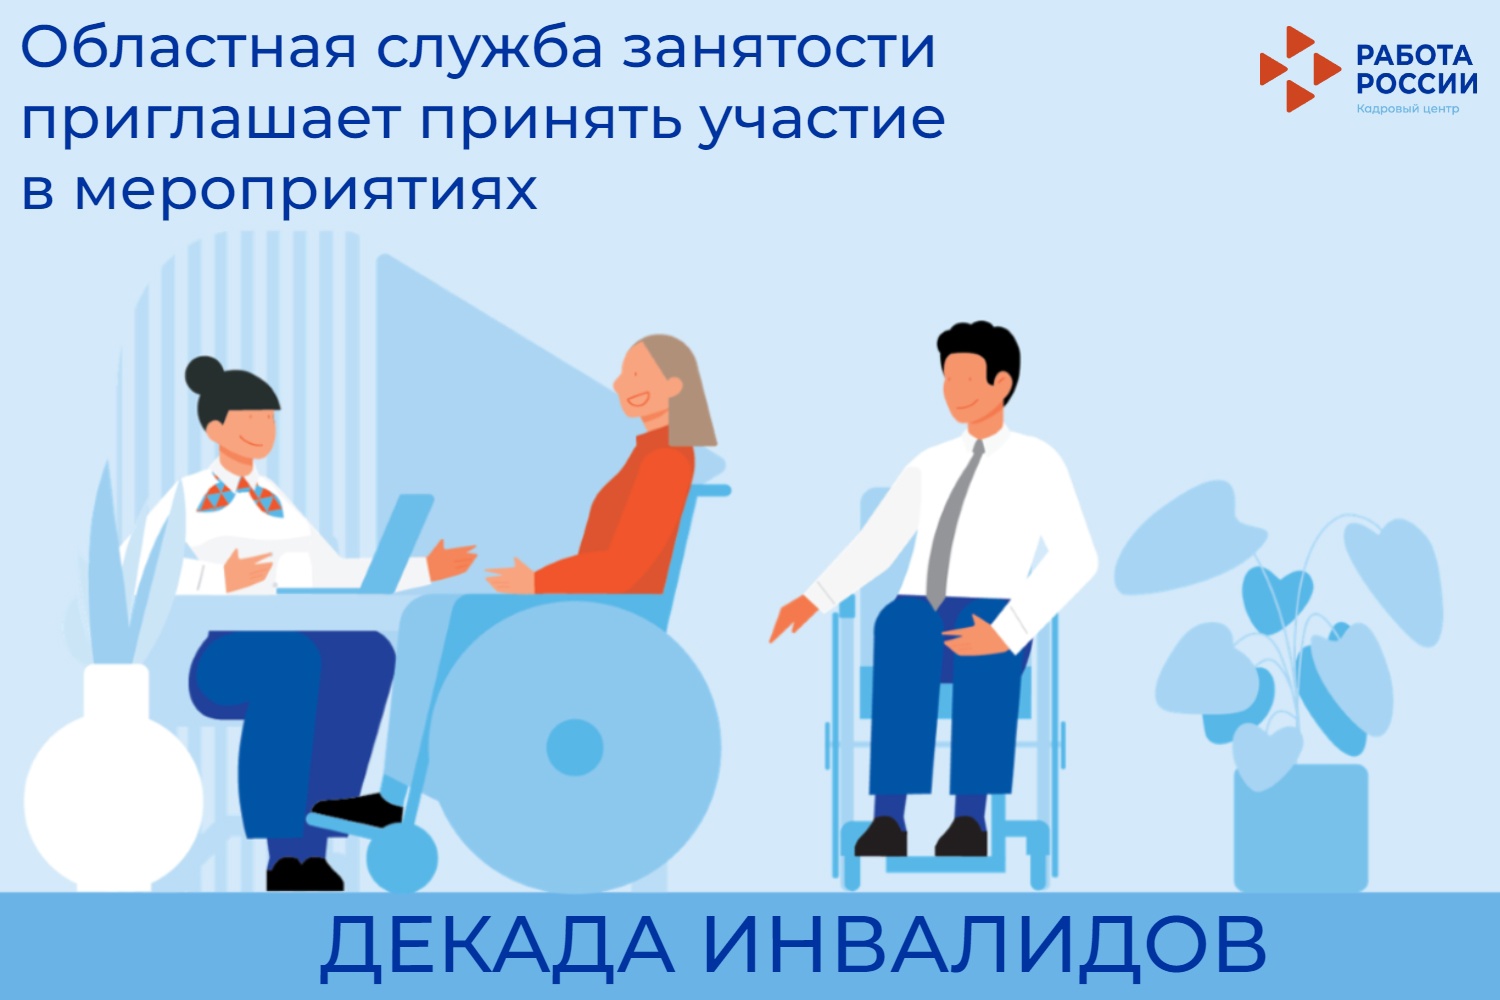 С 1 по 10 декабря в областной службе занятости пройдут мероприятия для граждан с инвалидностью и работодателей​​